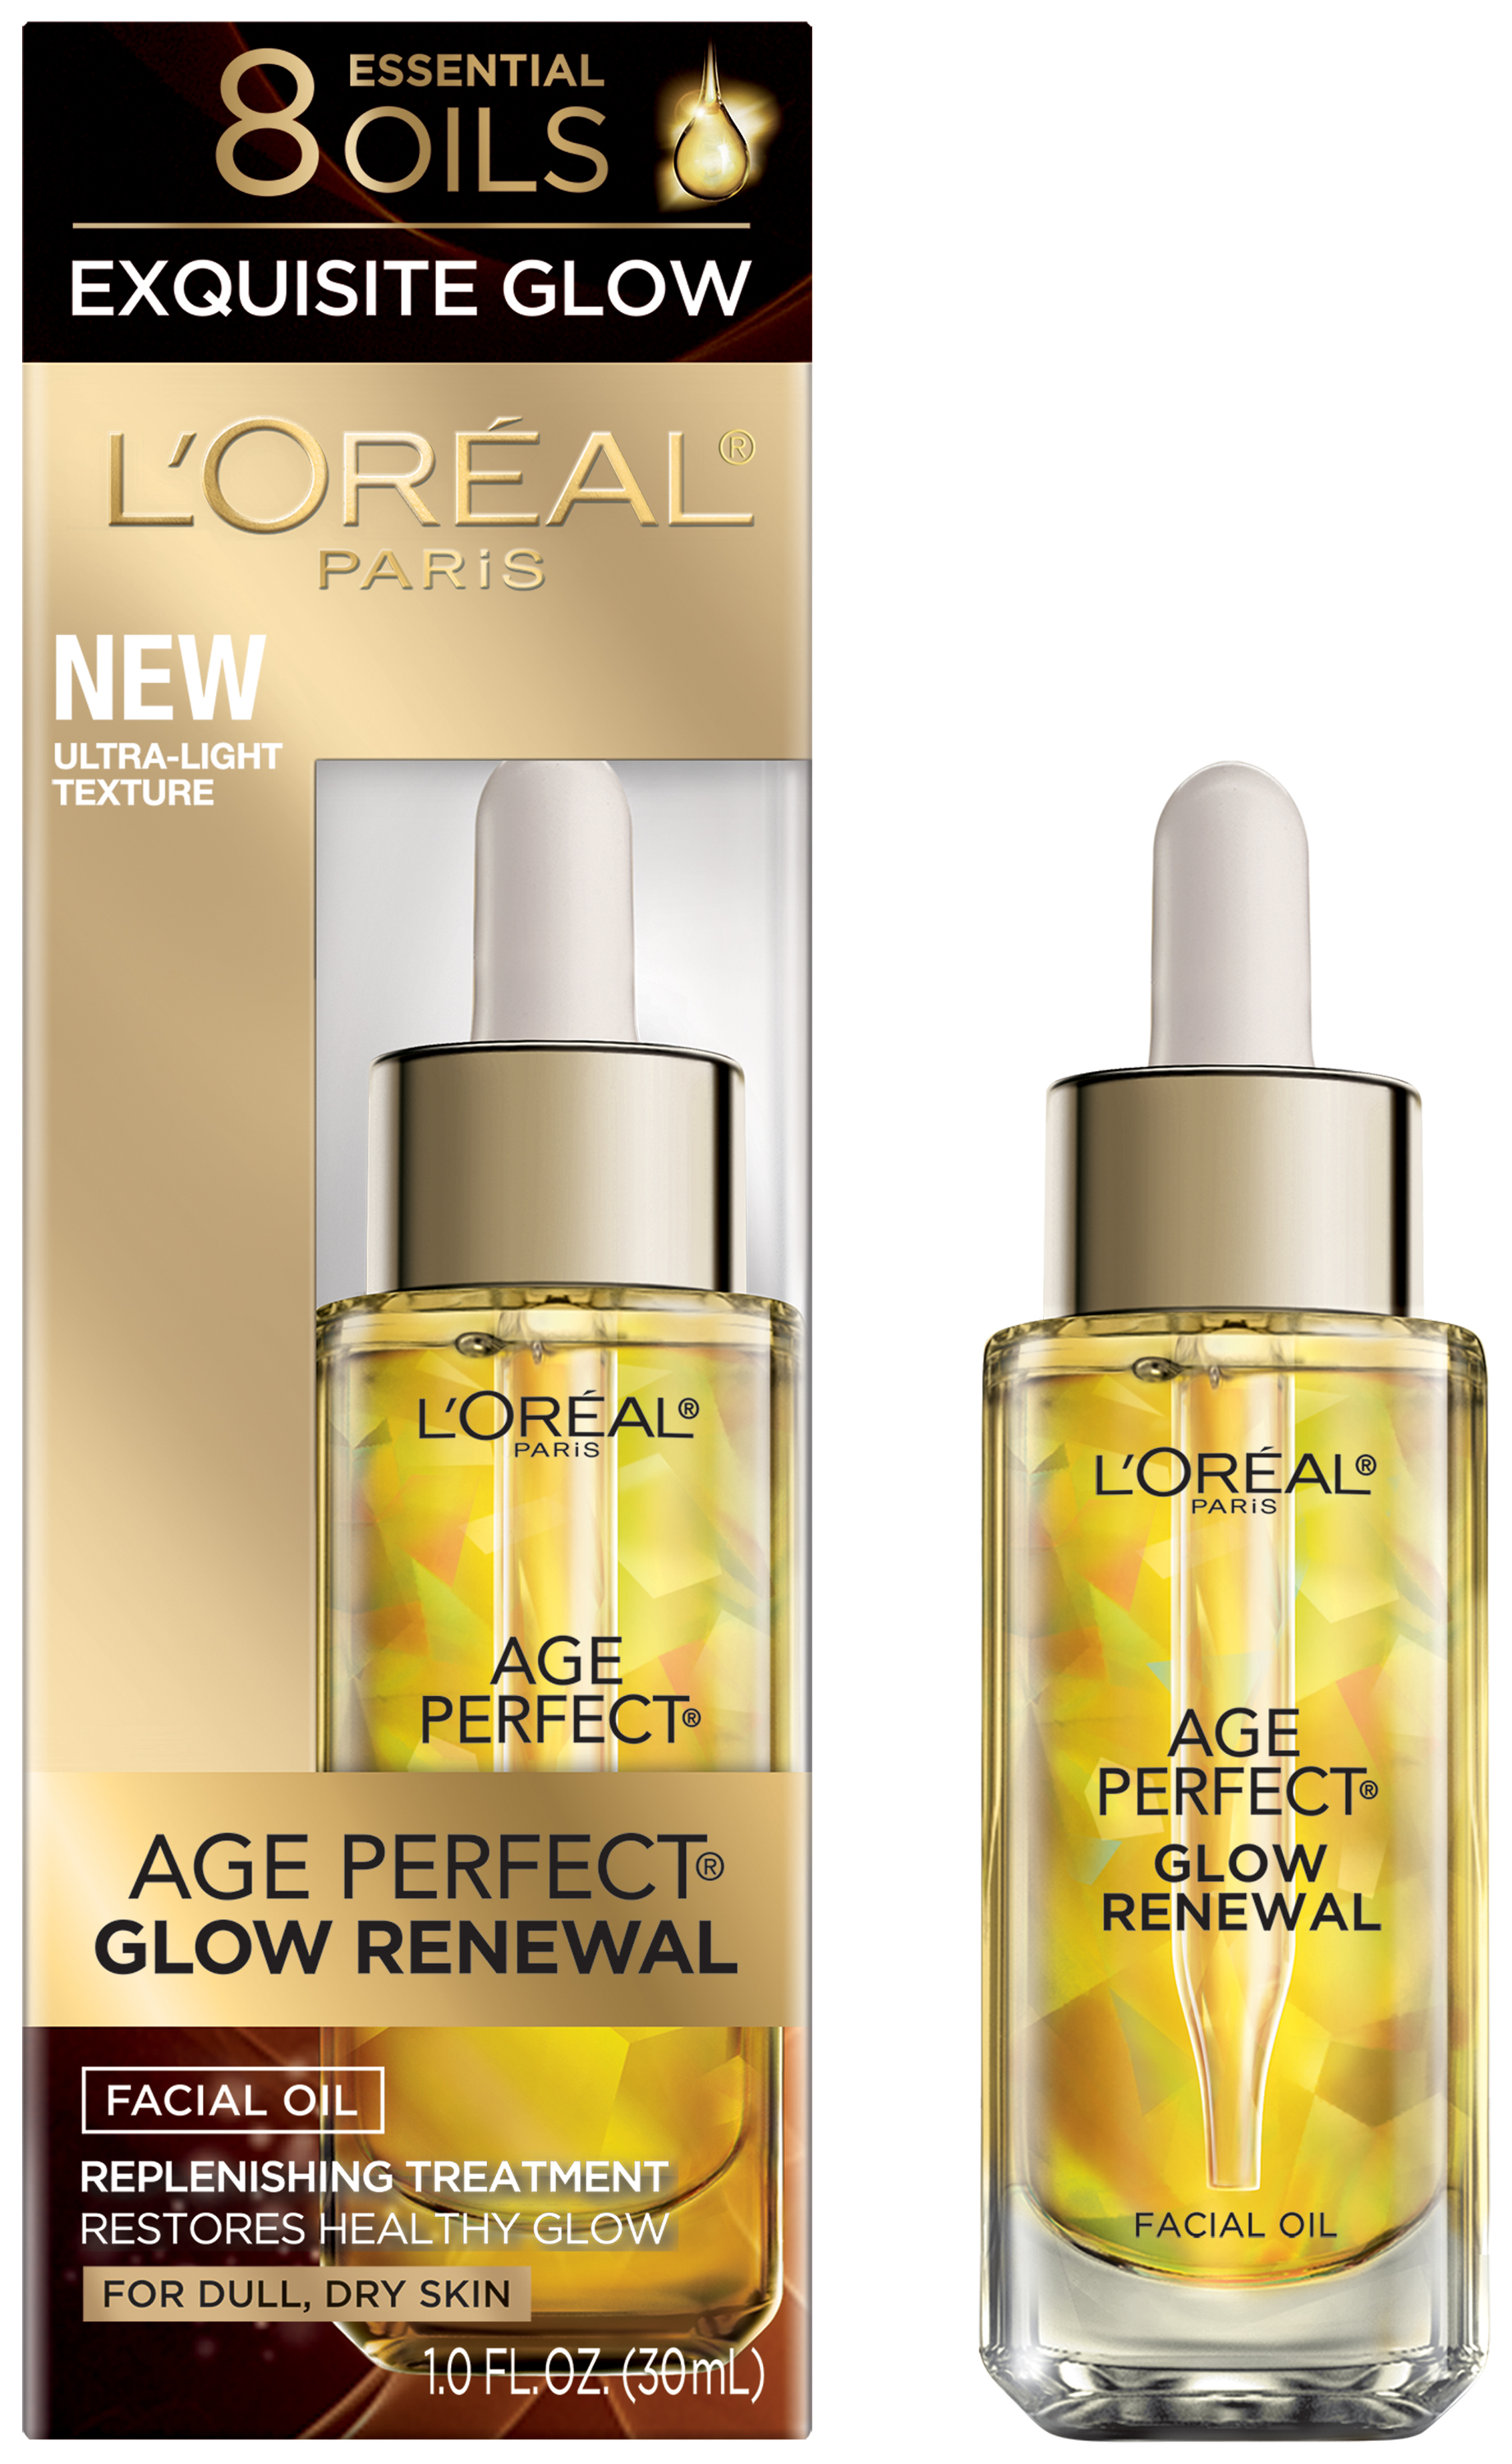 L'Oreal Age Renewal Glow Renewal Facial Oil